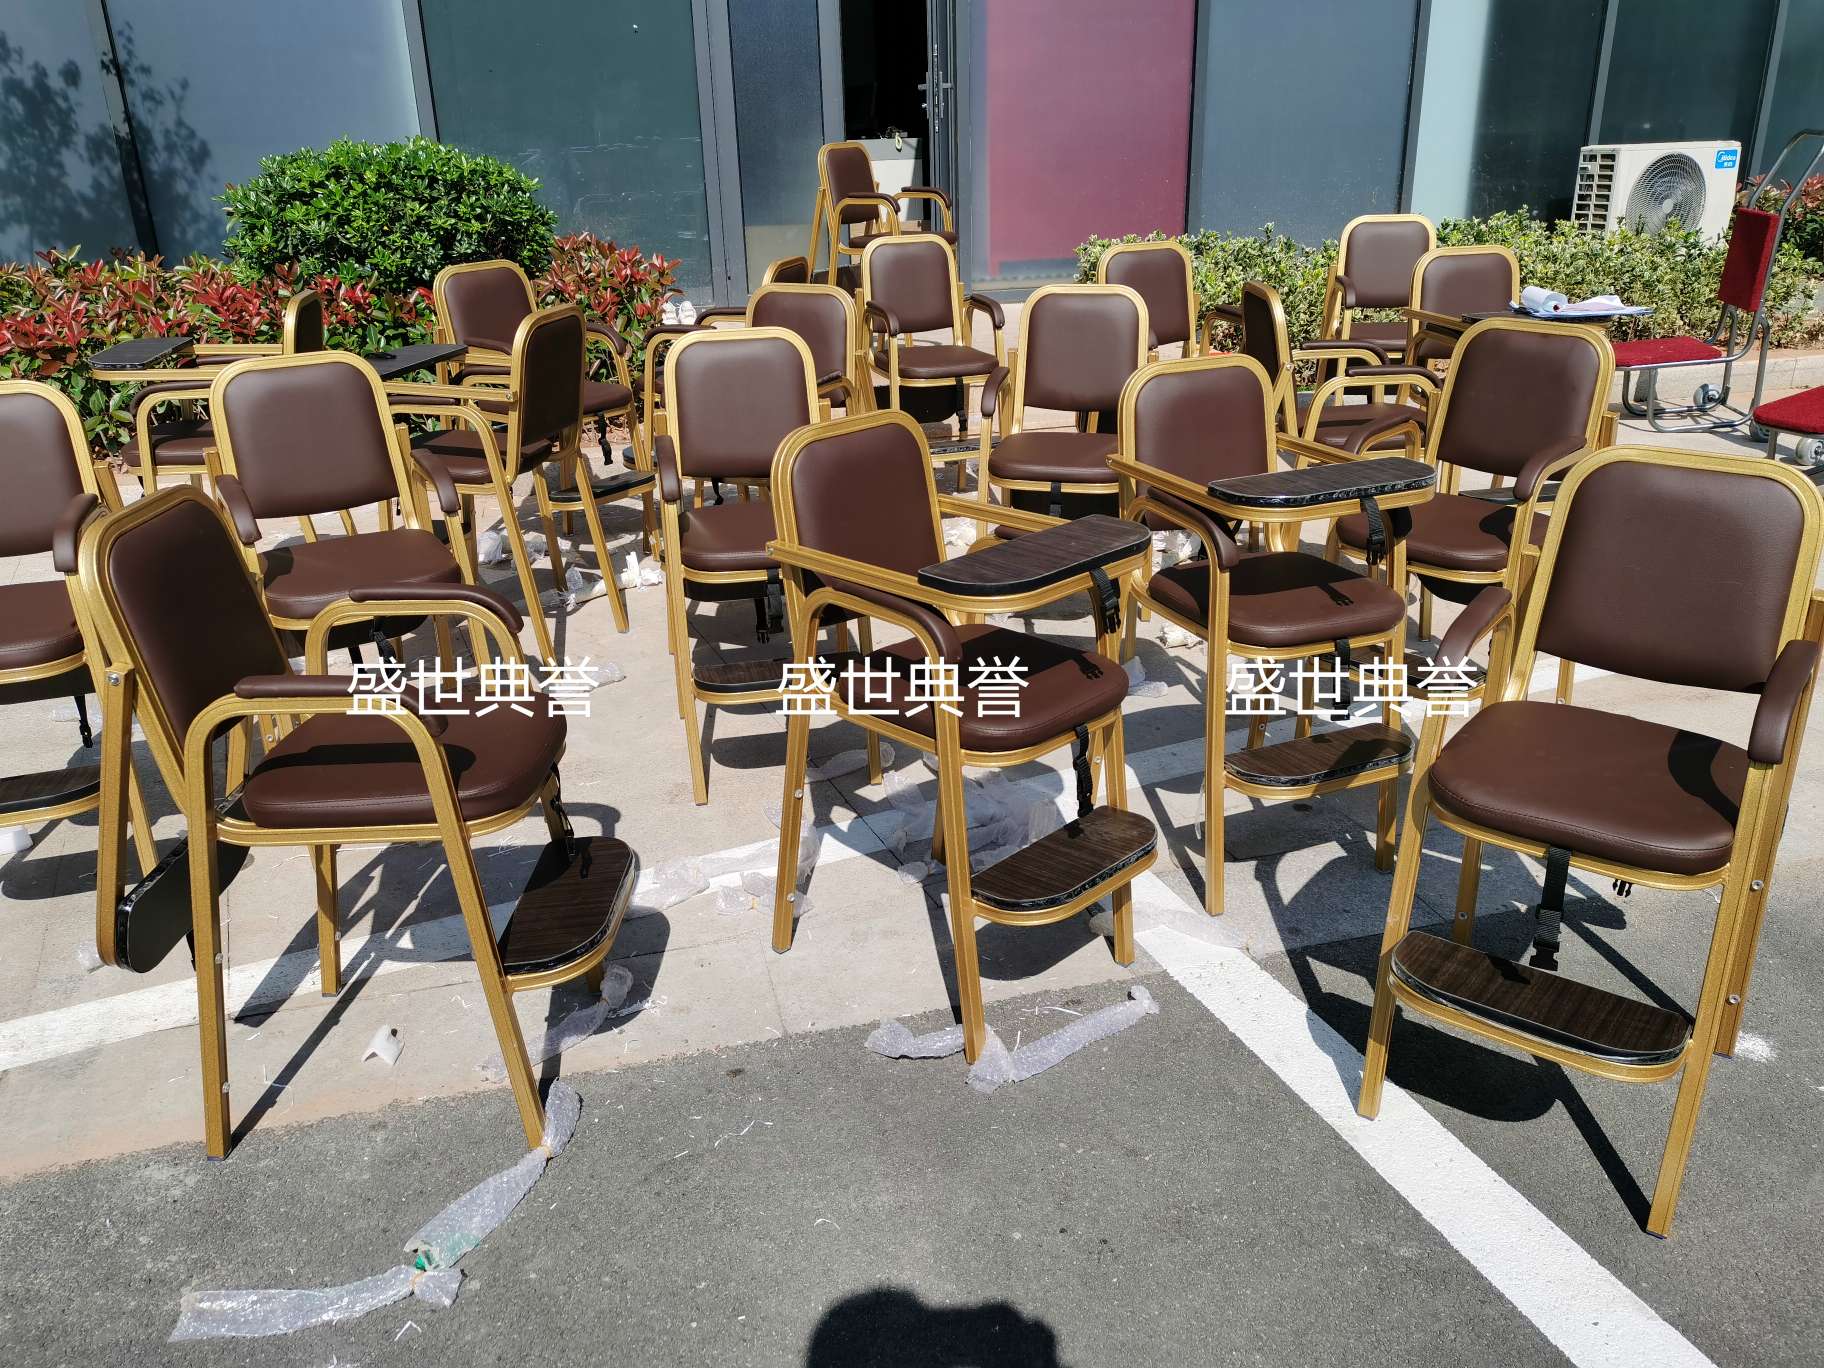 上海五星级酒店宴会厅宝宝餐椅饭店包厢儿童就餐椅子铝合金宝宝椅详情图13